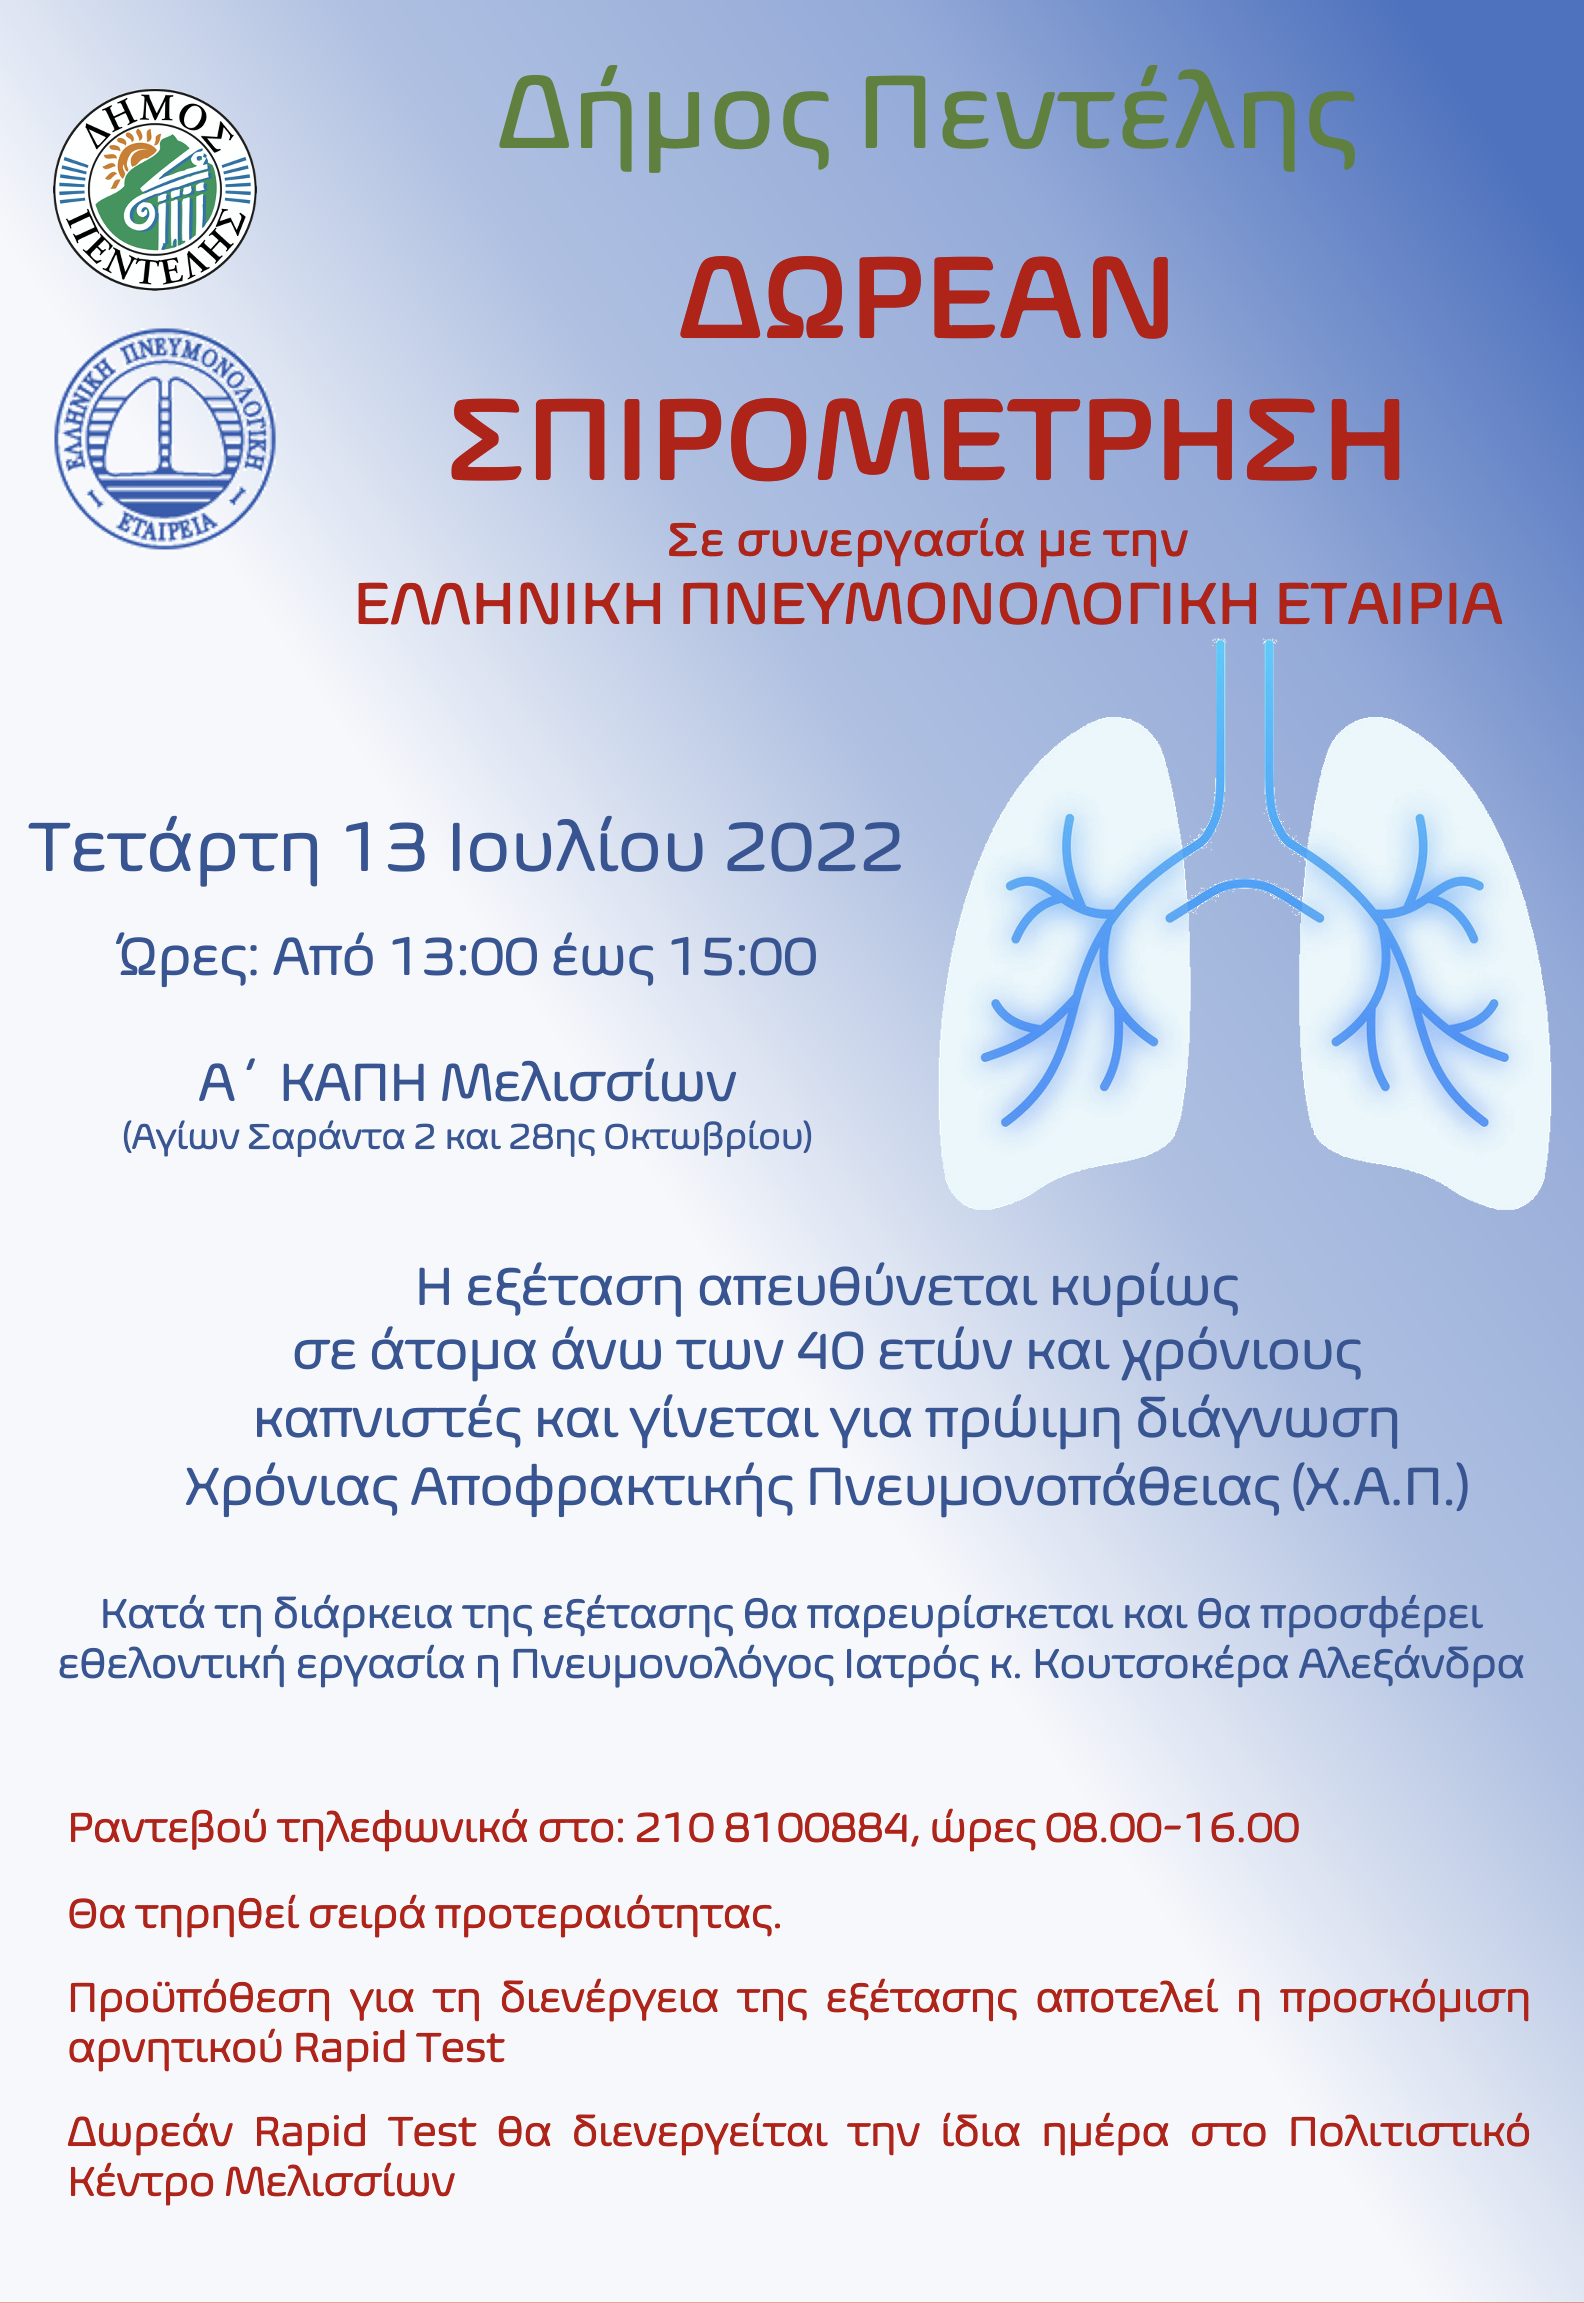 Δωρεάν προληπτική σπιρομέτρηση και ενημέρωση για τη χρόνια αποφρακτική πνευμονοπάθεια των καπνιστών σε συνεργασία με την Ελληνική Πνευμονολογική Εταιρεία στο πλαίσιο του προγράμματος προληπτικής ιατρικής του Δήμου Πεντέλης